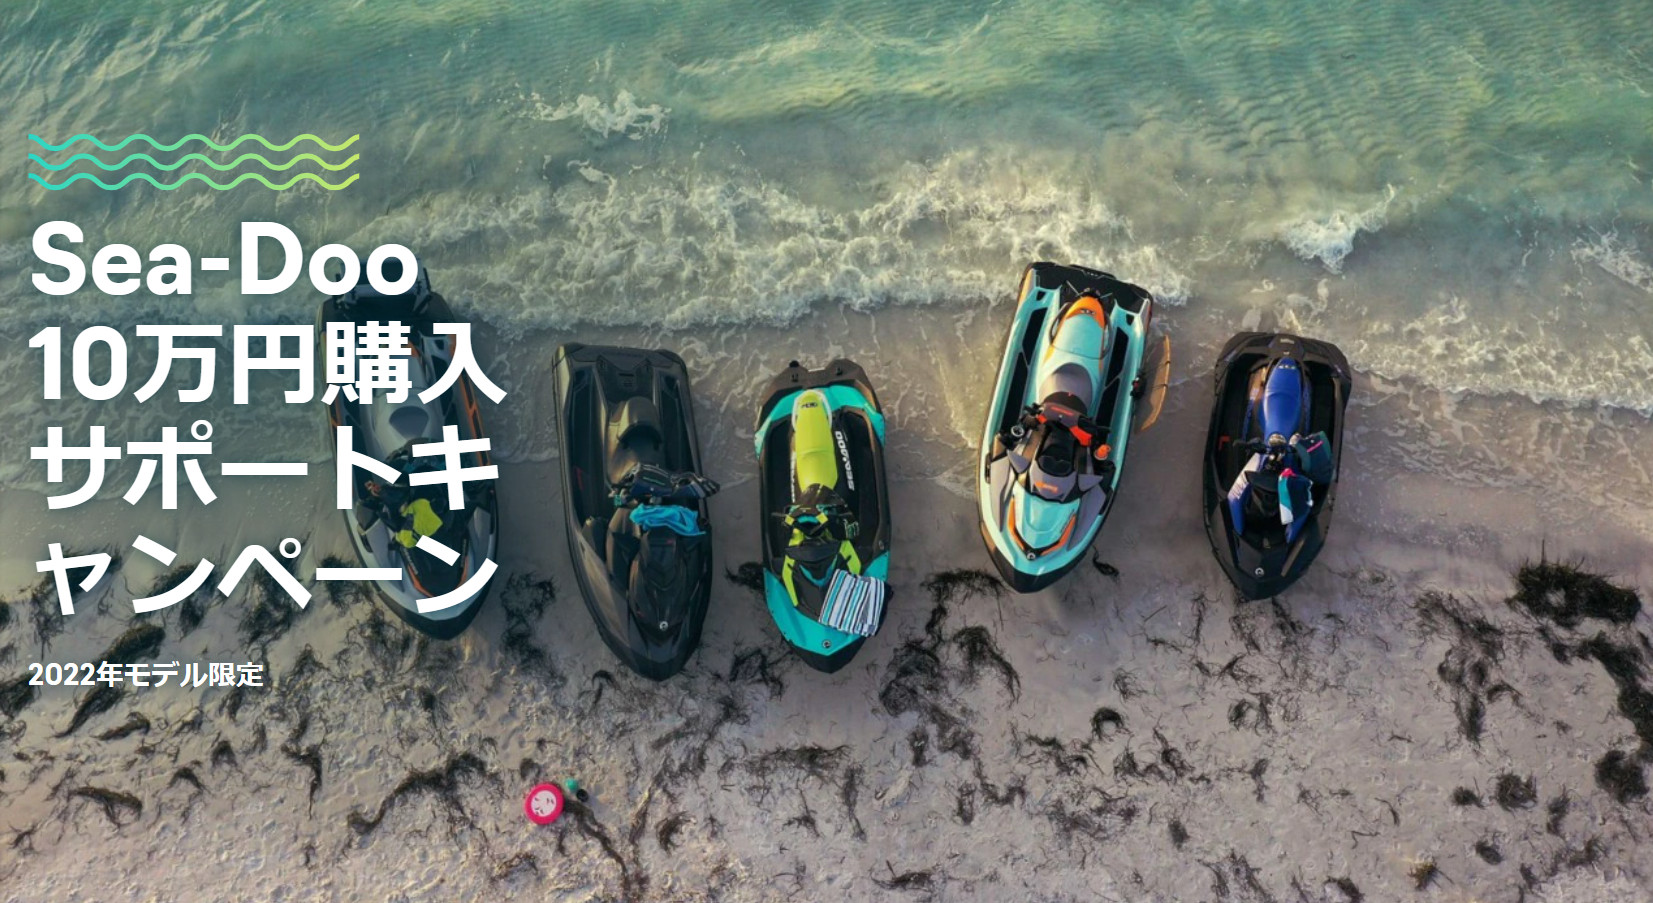 Sea-Doo 10万円購入サポートキャンペーン画像